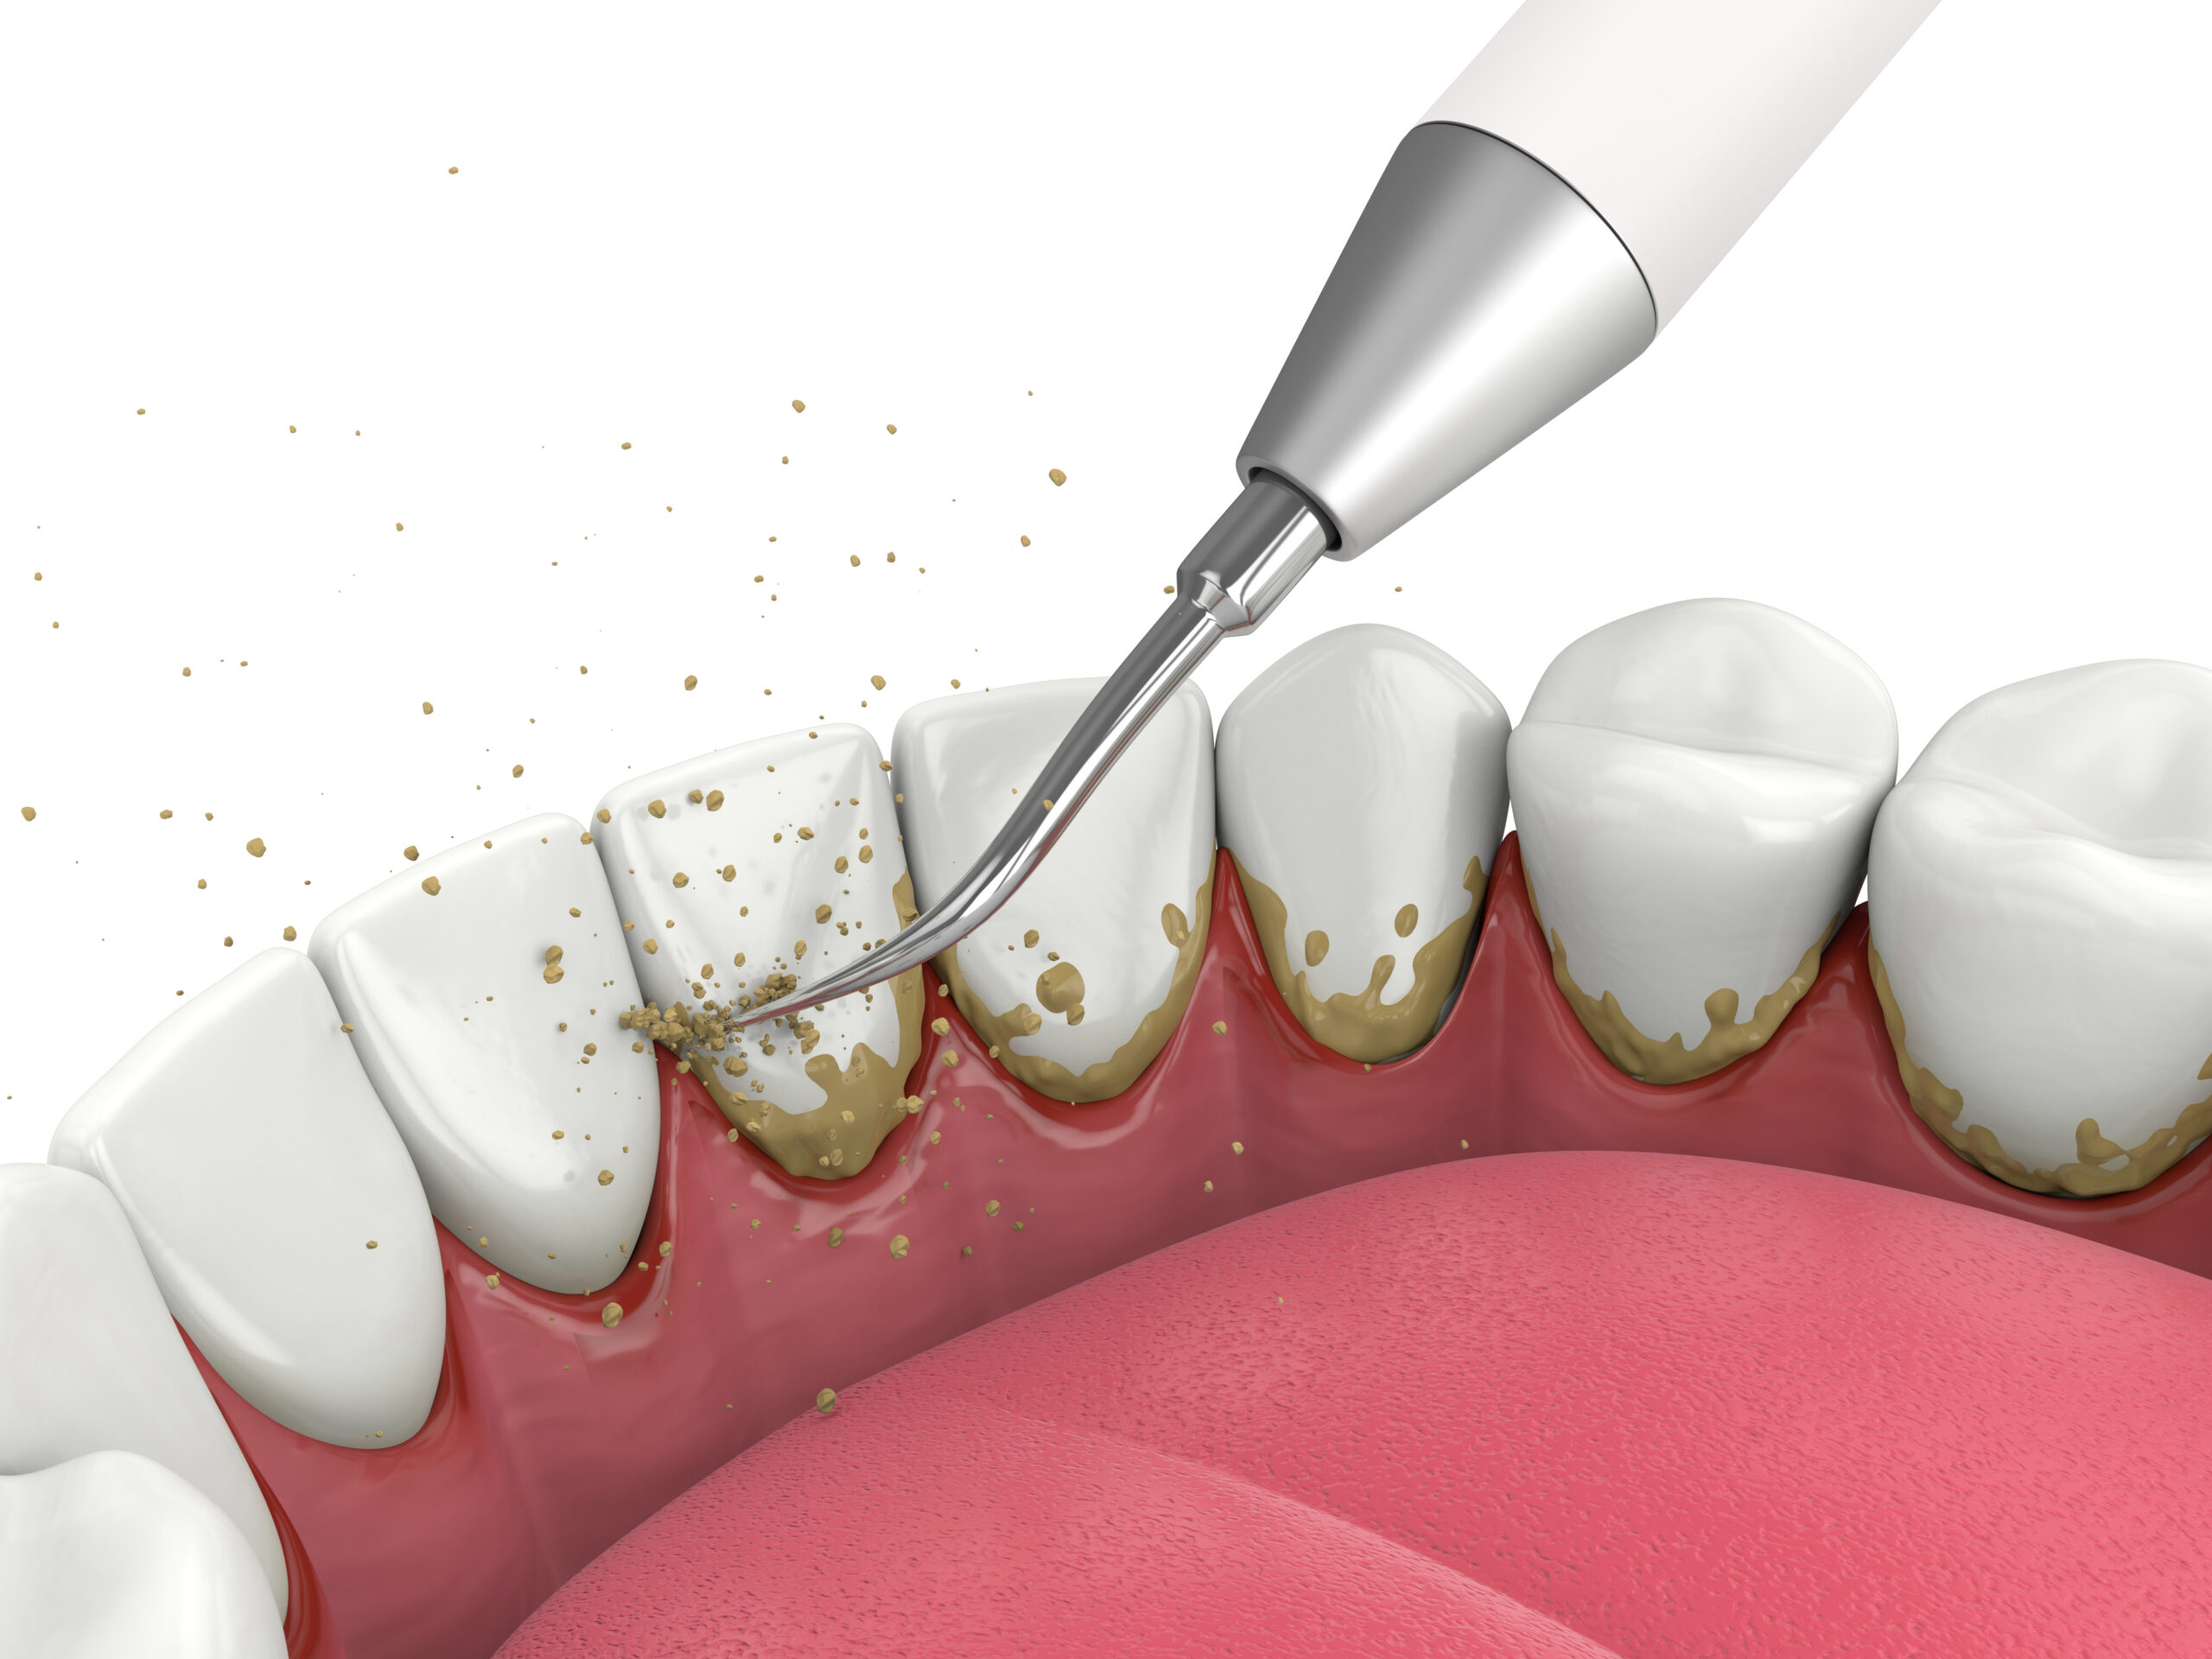 Reproducción de la eliminación de la placa de los dientes con un desincrustante ultrasónico.